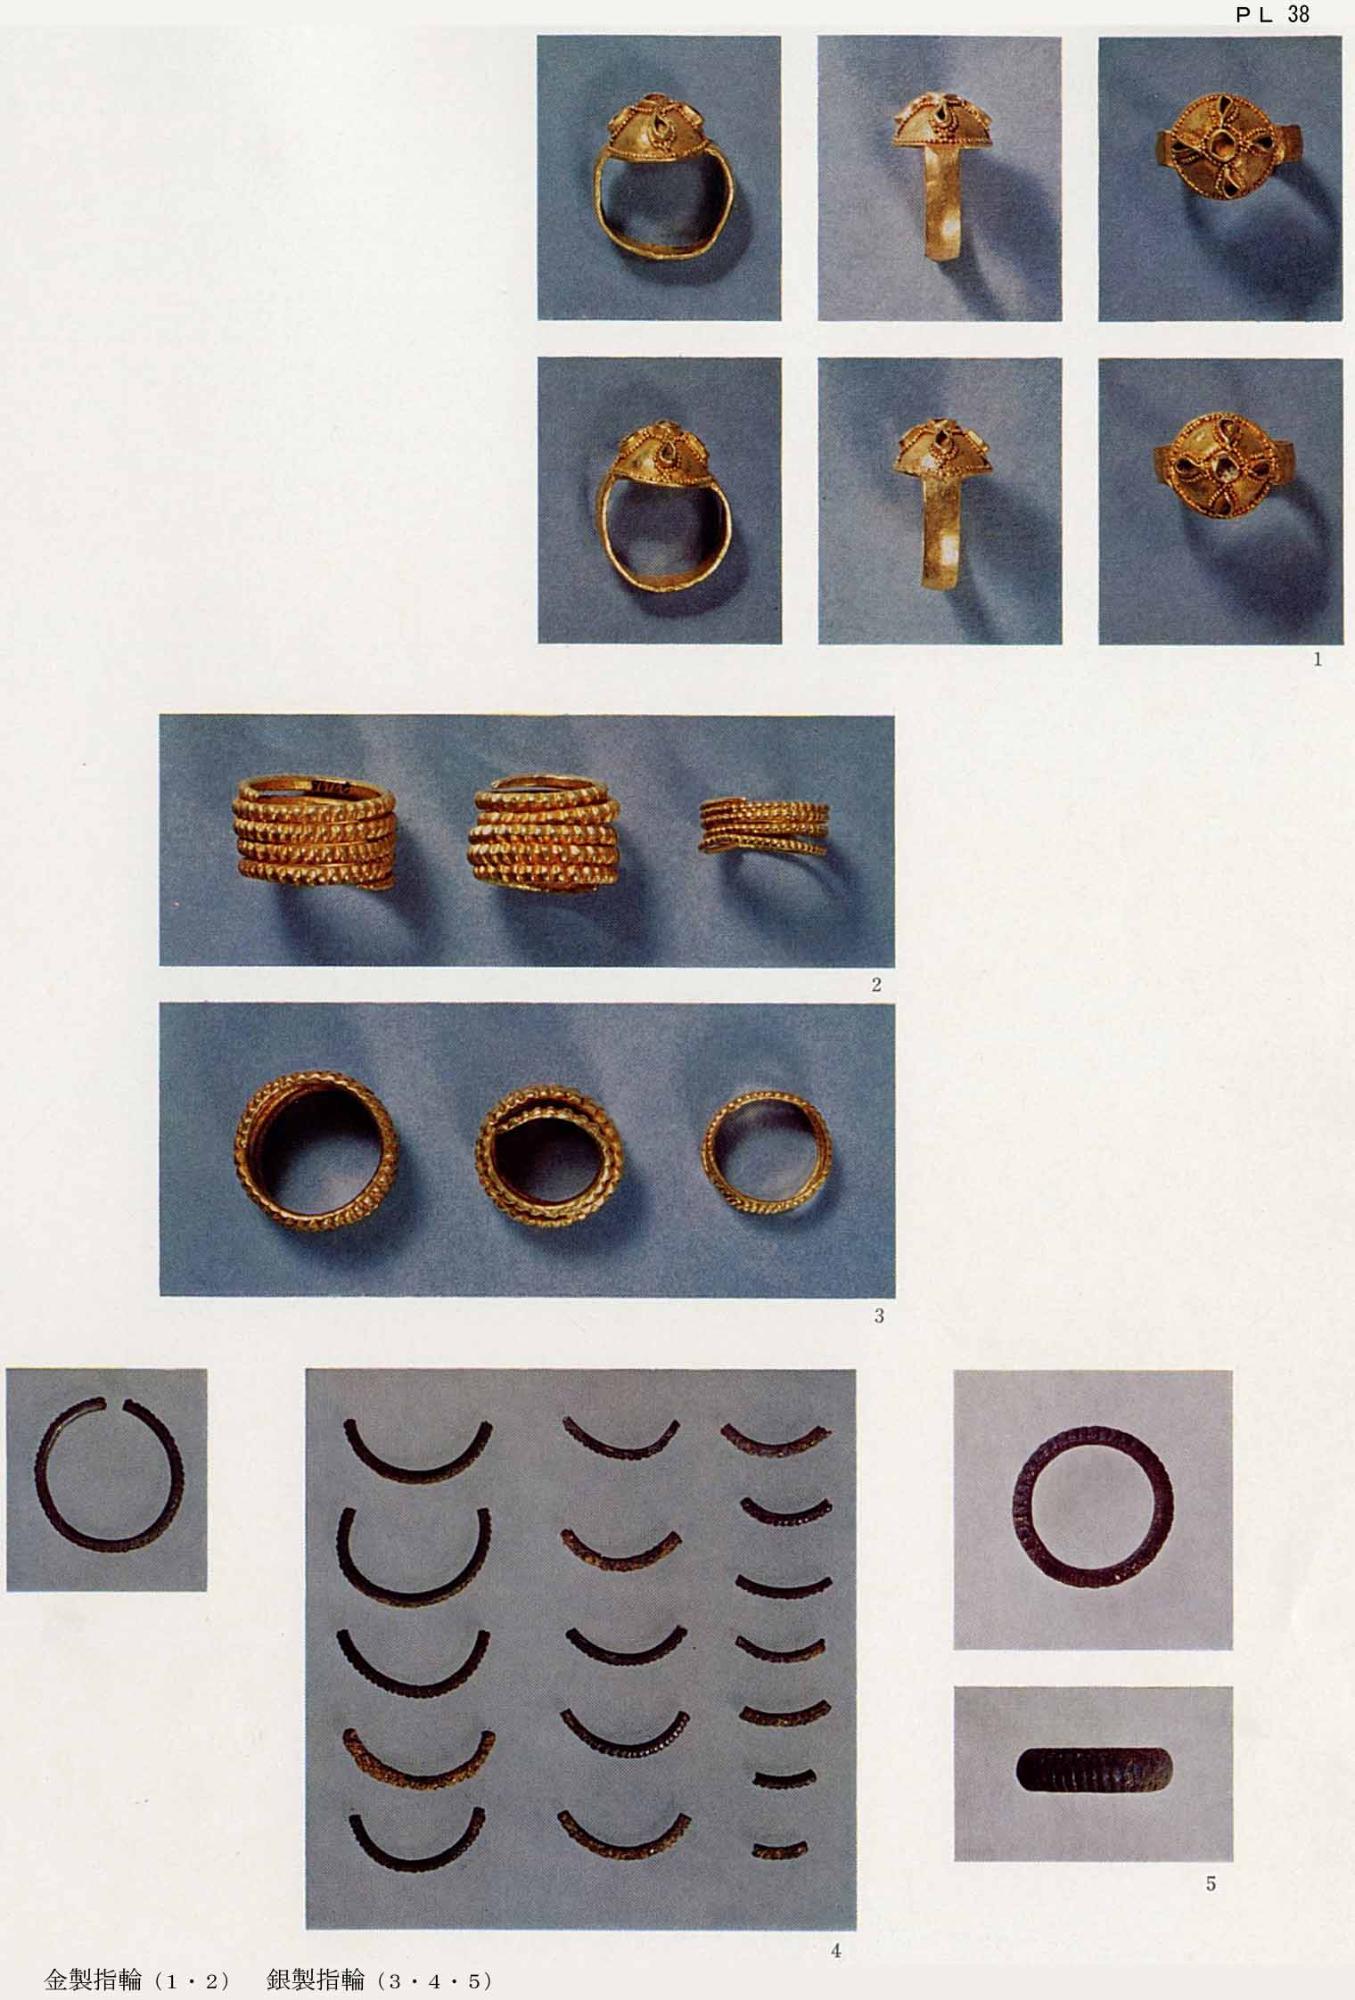 金でできた指輪が6枚、3つ並んでいる金の指輪がが2枚、銀でできた指輪が4枚それぞれ撮影されている、126号PL38金製指輪 銀製指輪の写真